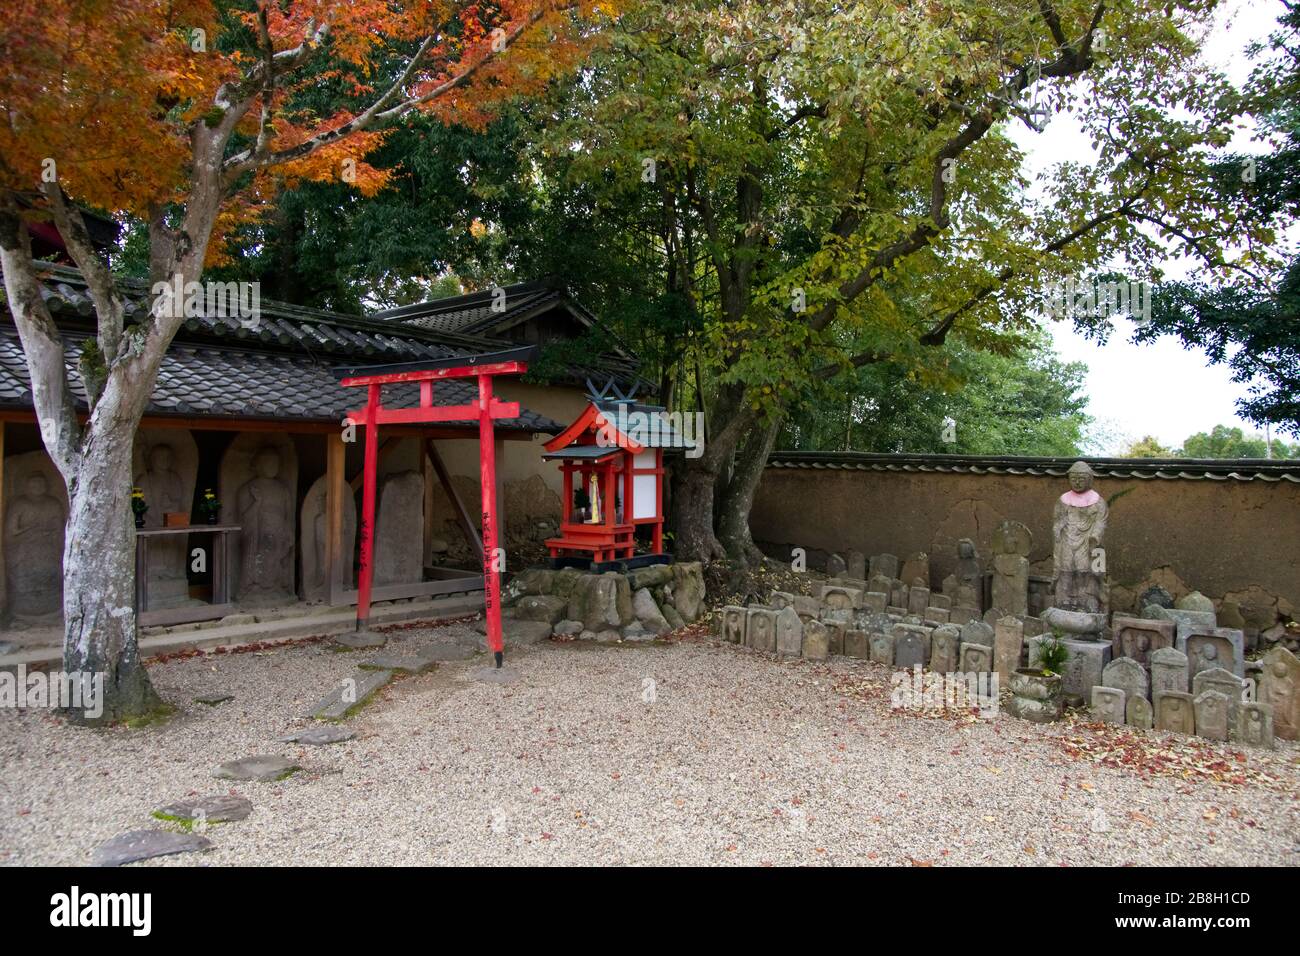 Shrines in temple in Nara Japan Stock Photo